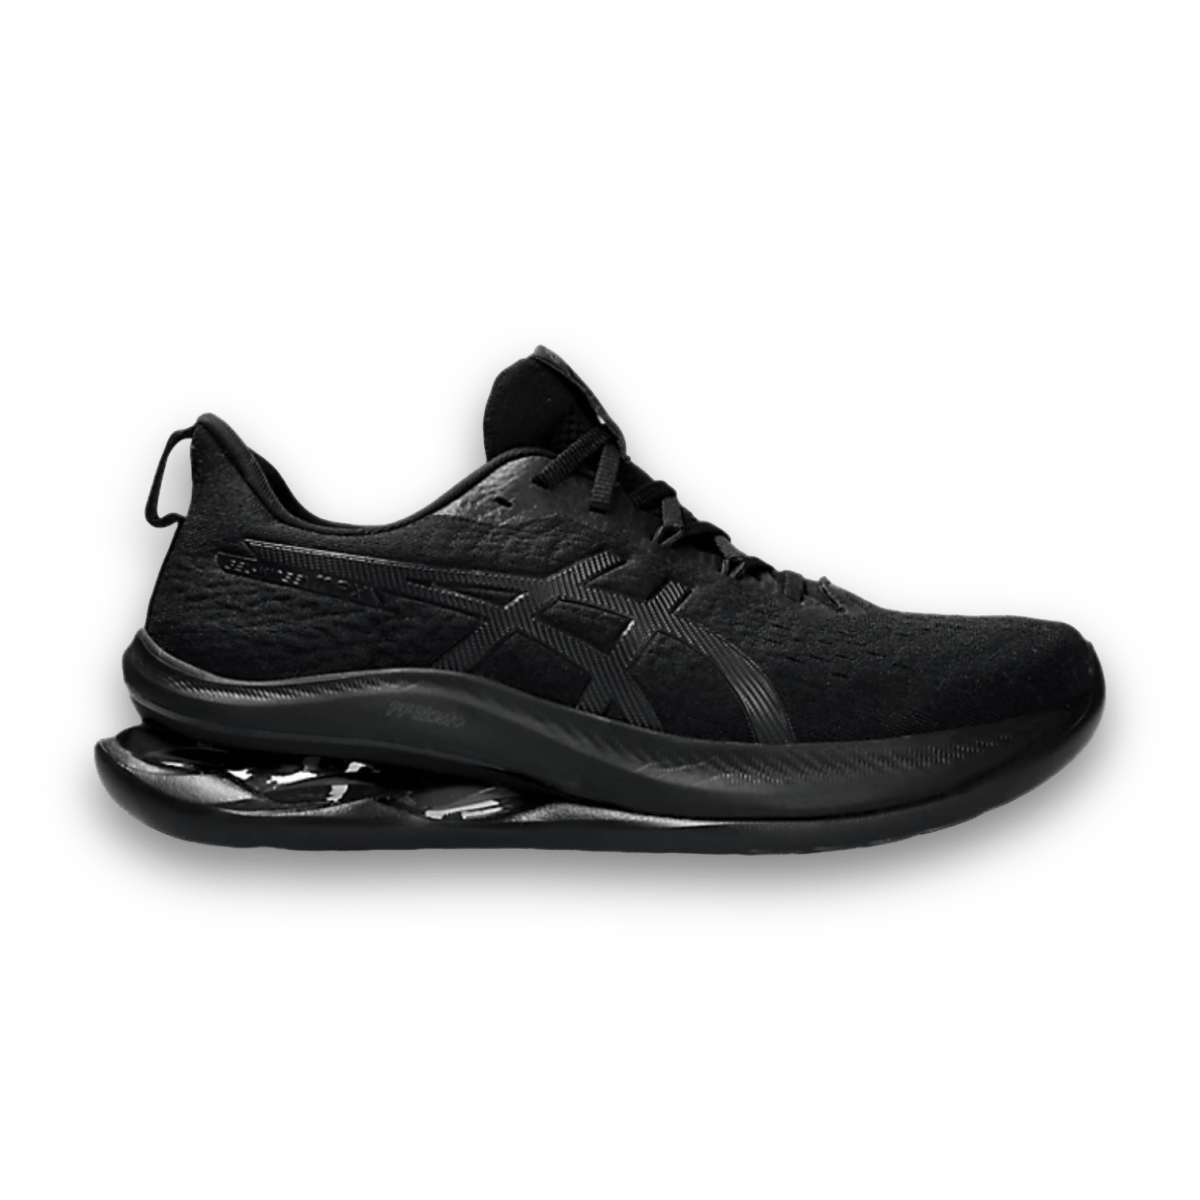 Asics Gel-Kinsei Max - Black - Low Sneaker - Jawns on Fire Sneakers & Streetwear